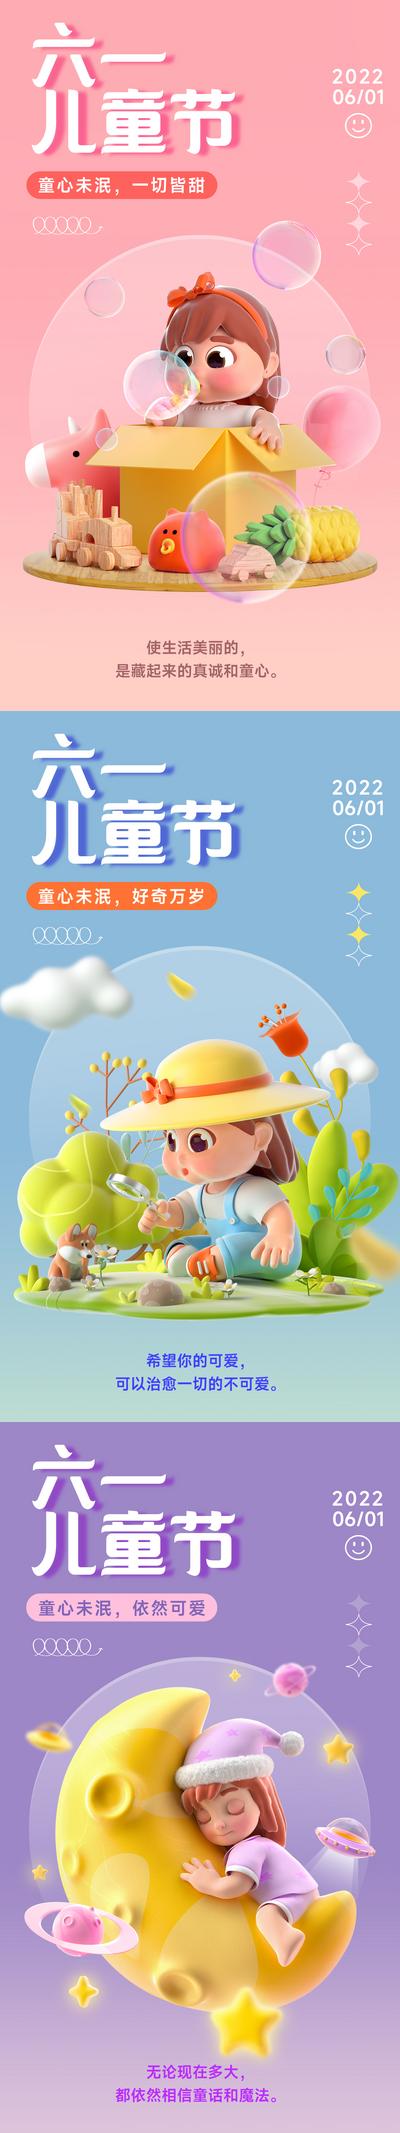 【南门网】广告 海报 节日 儿童节 六一 人物 创意 C4D 可爱 场景